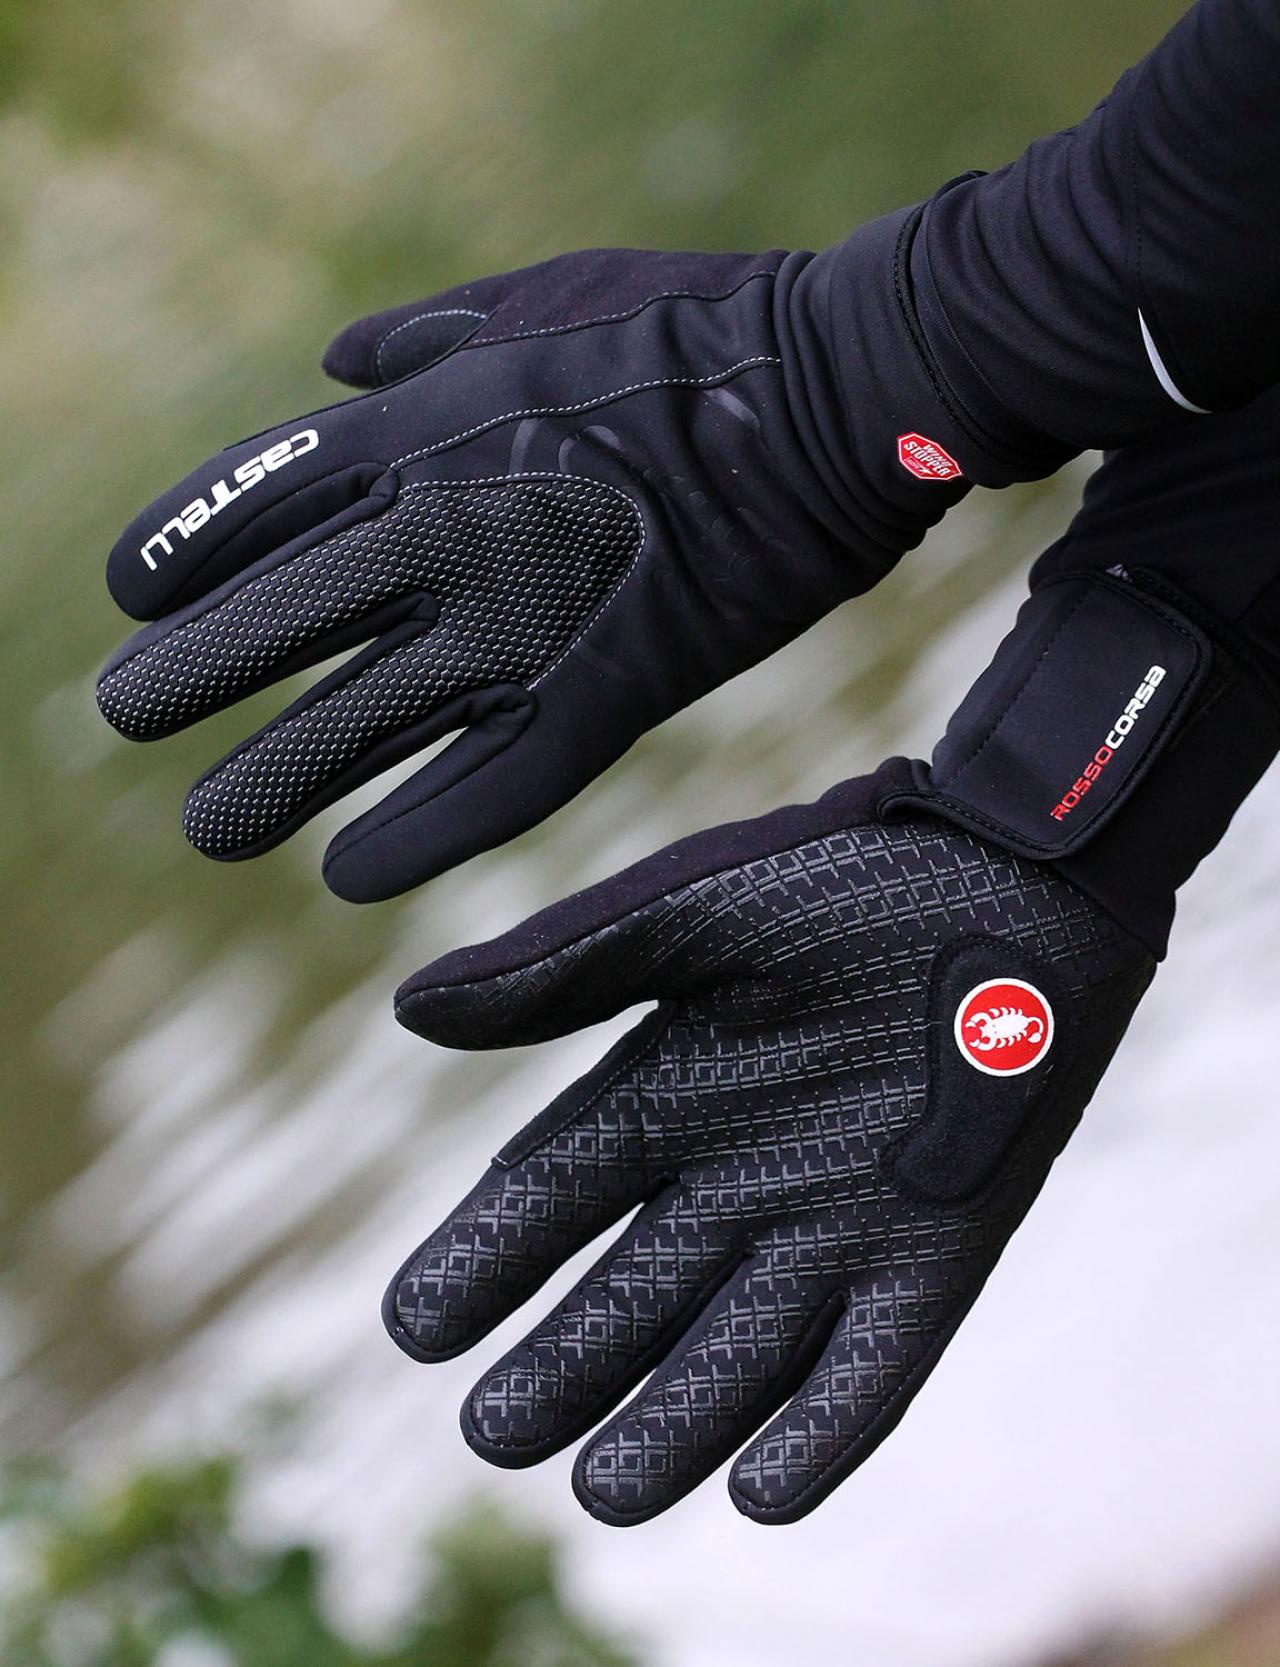 castelli winter gloves